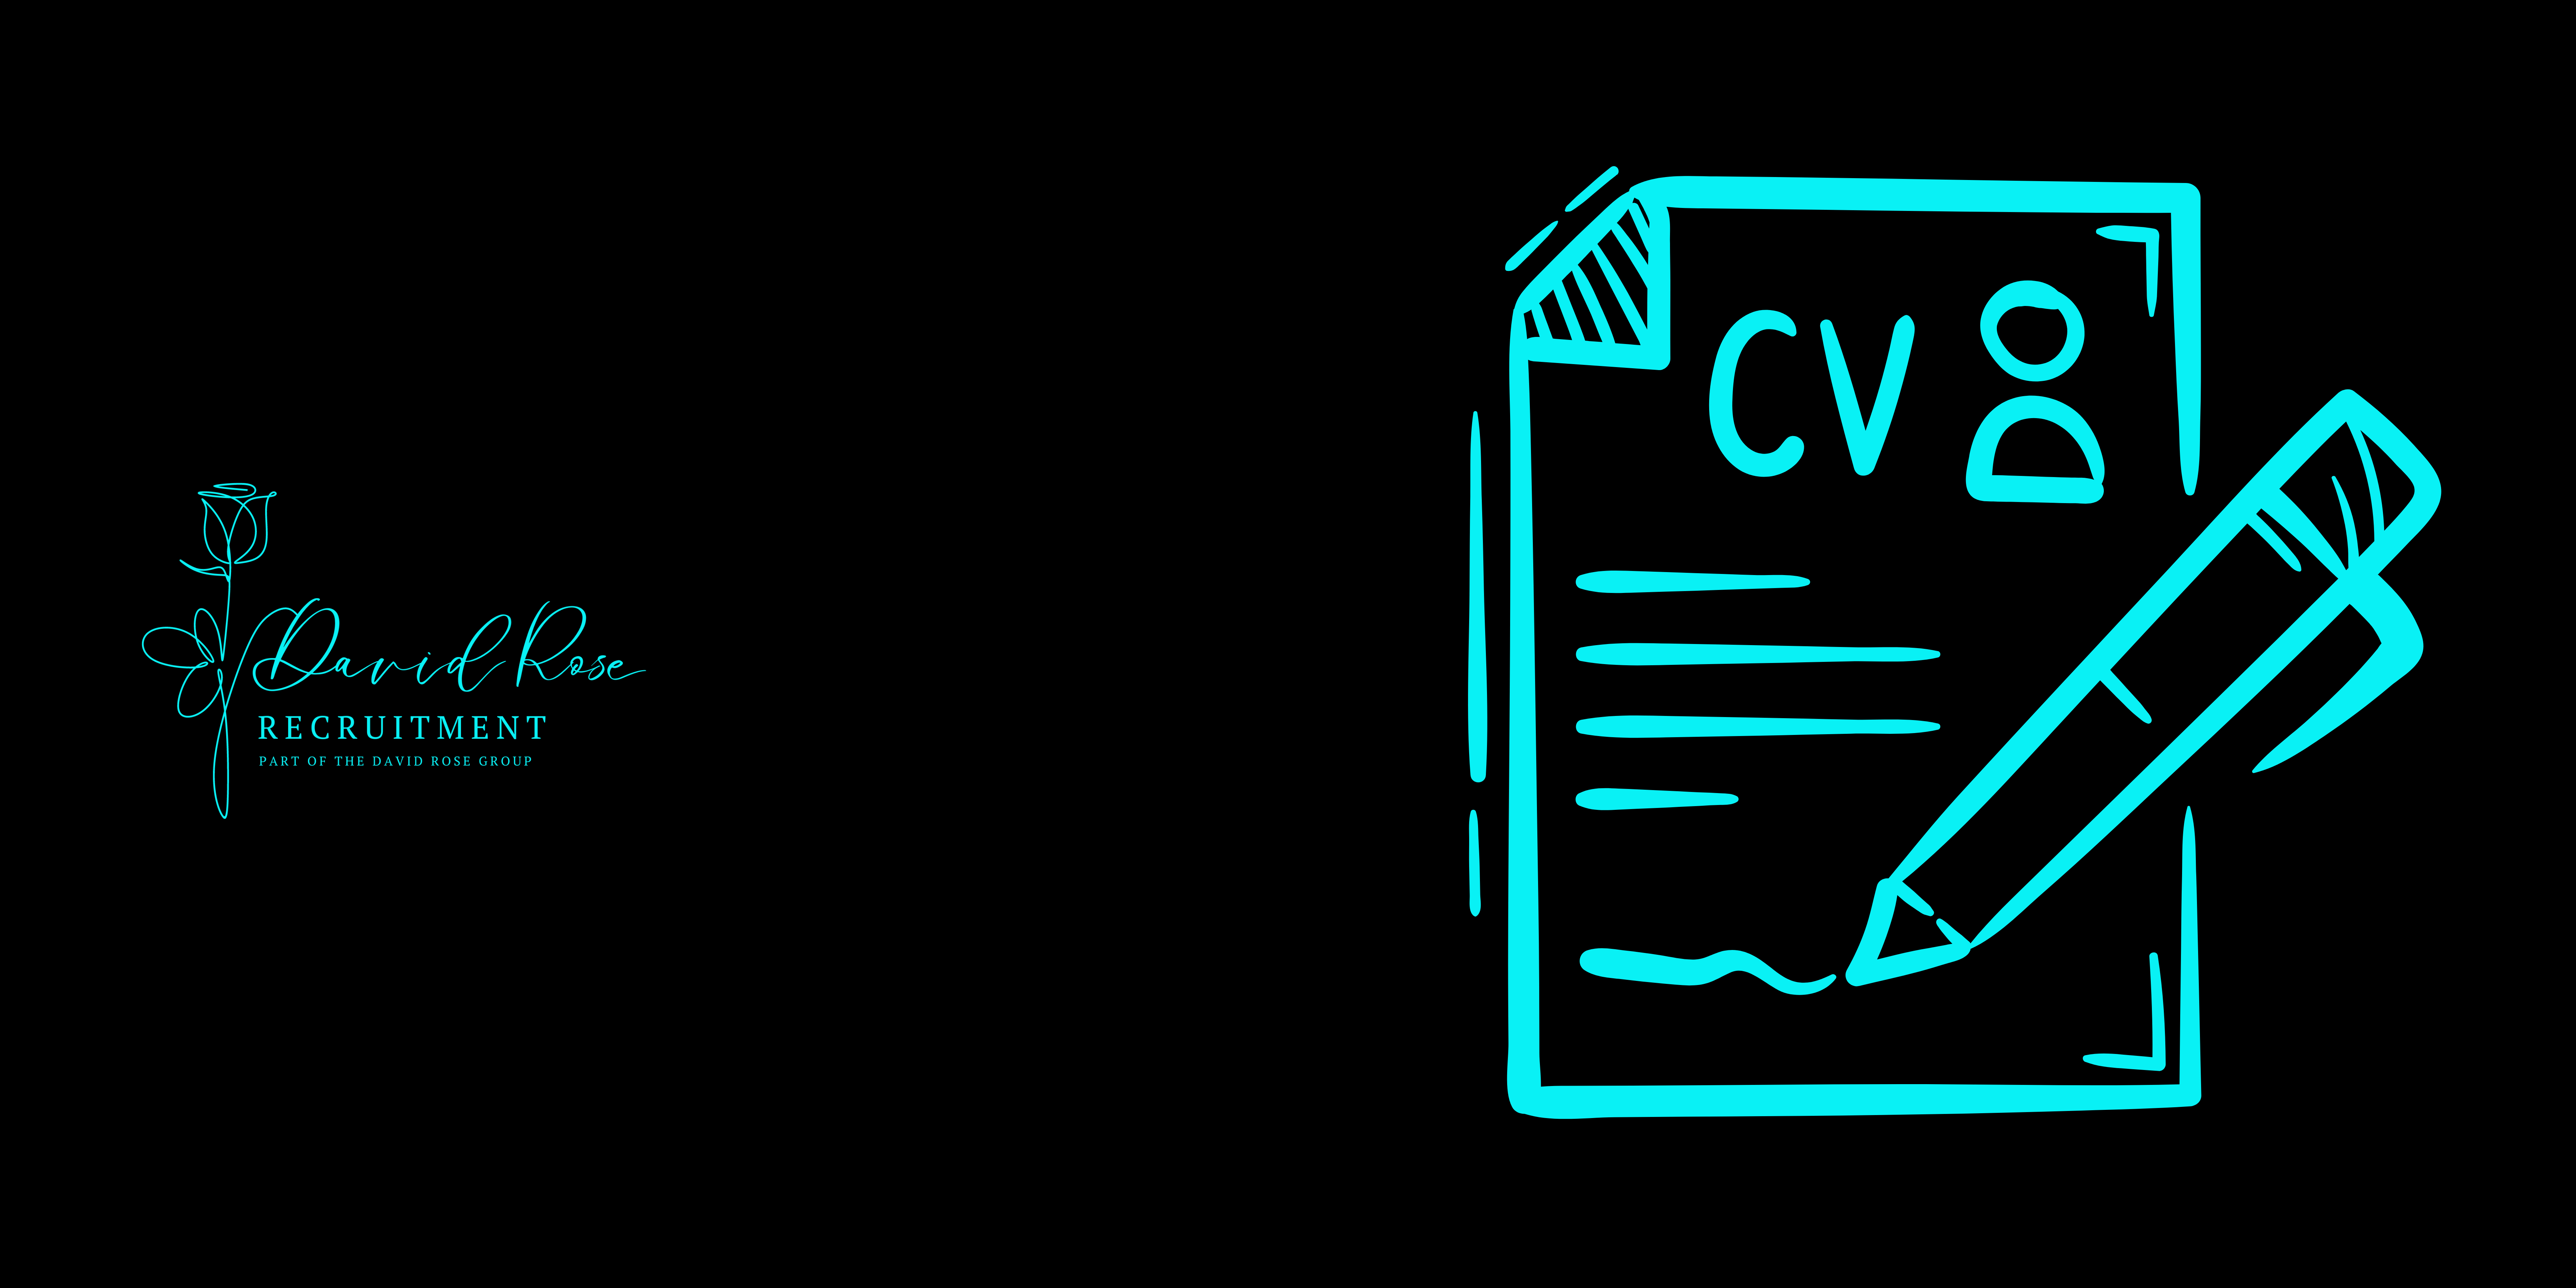 The Visual CV – Yes Or No?